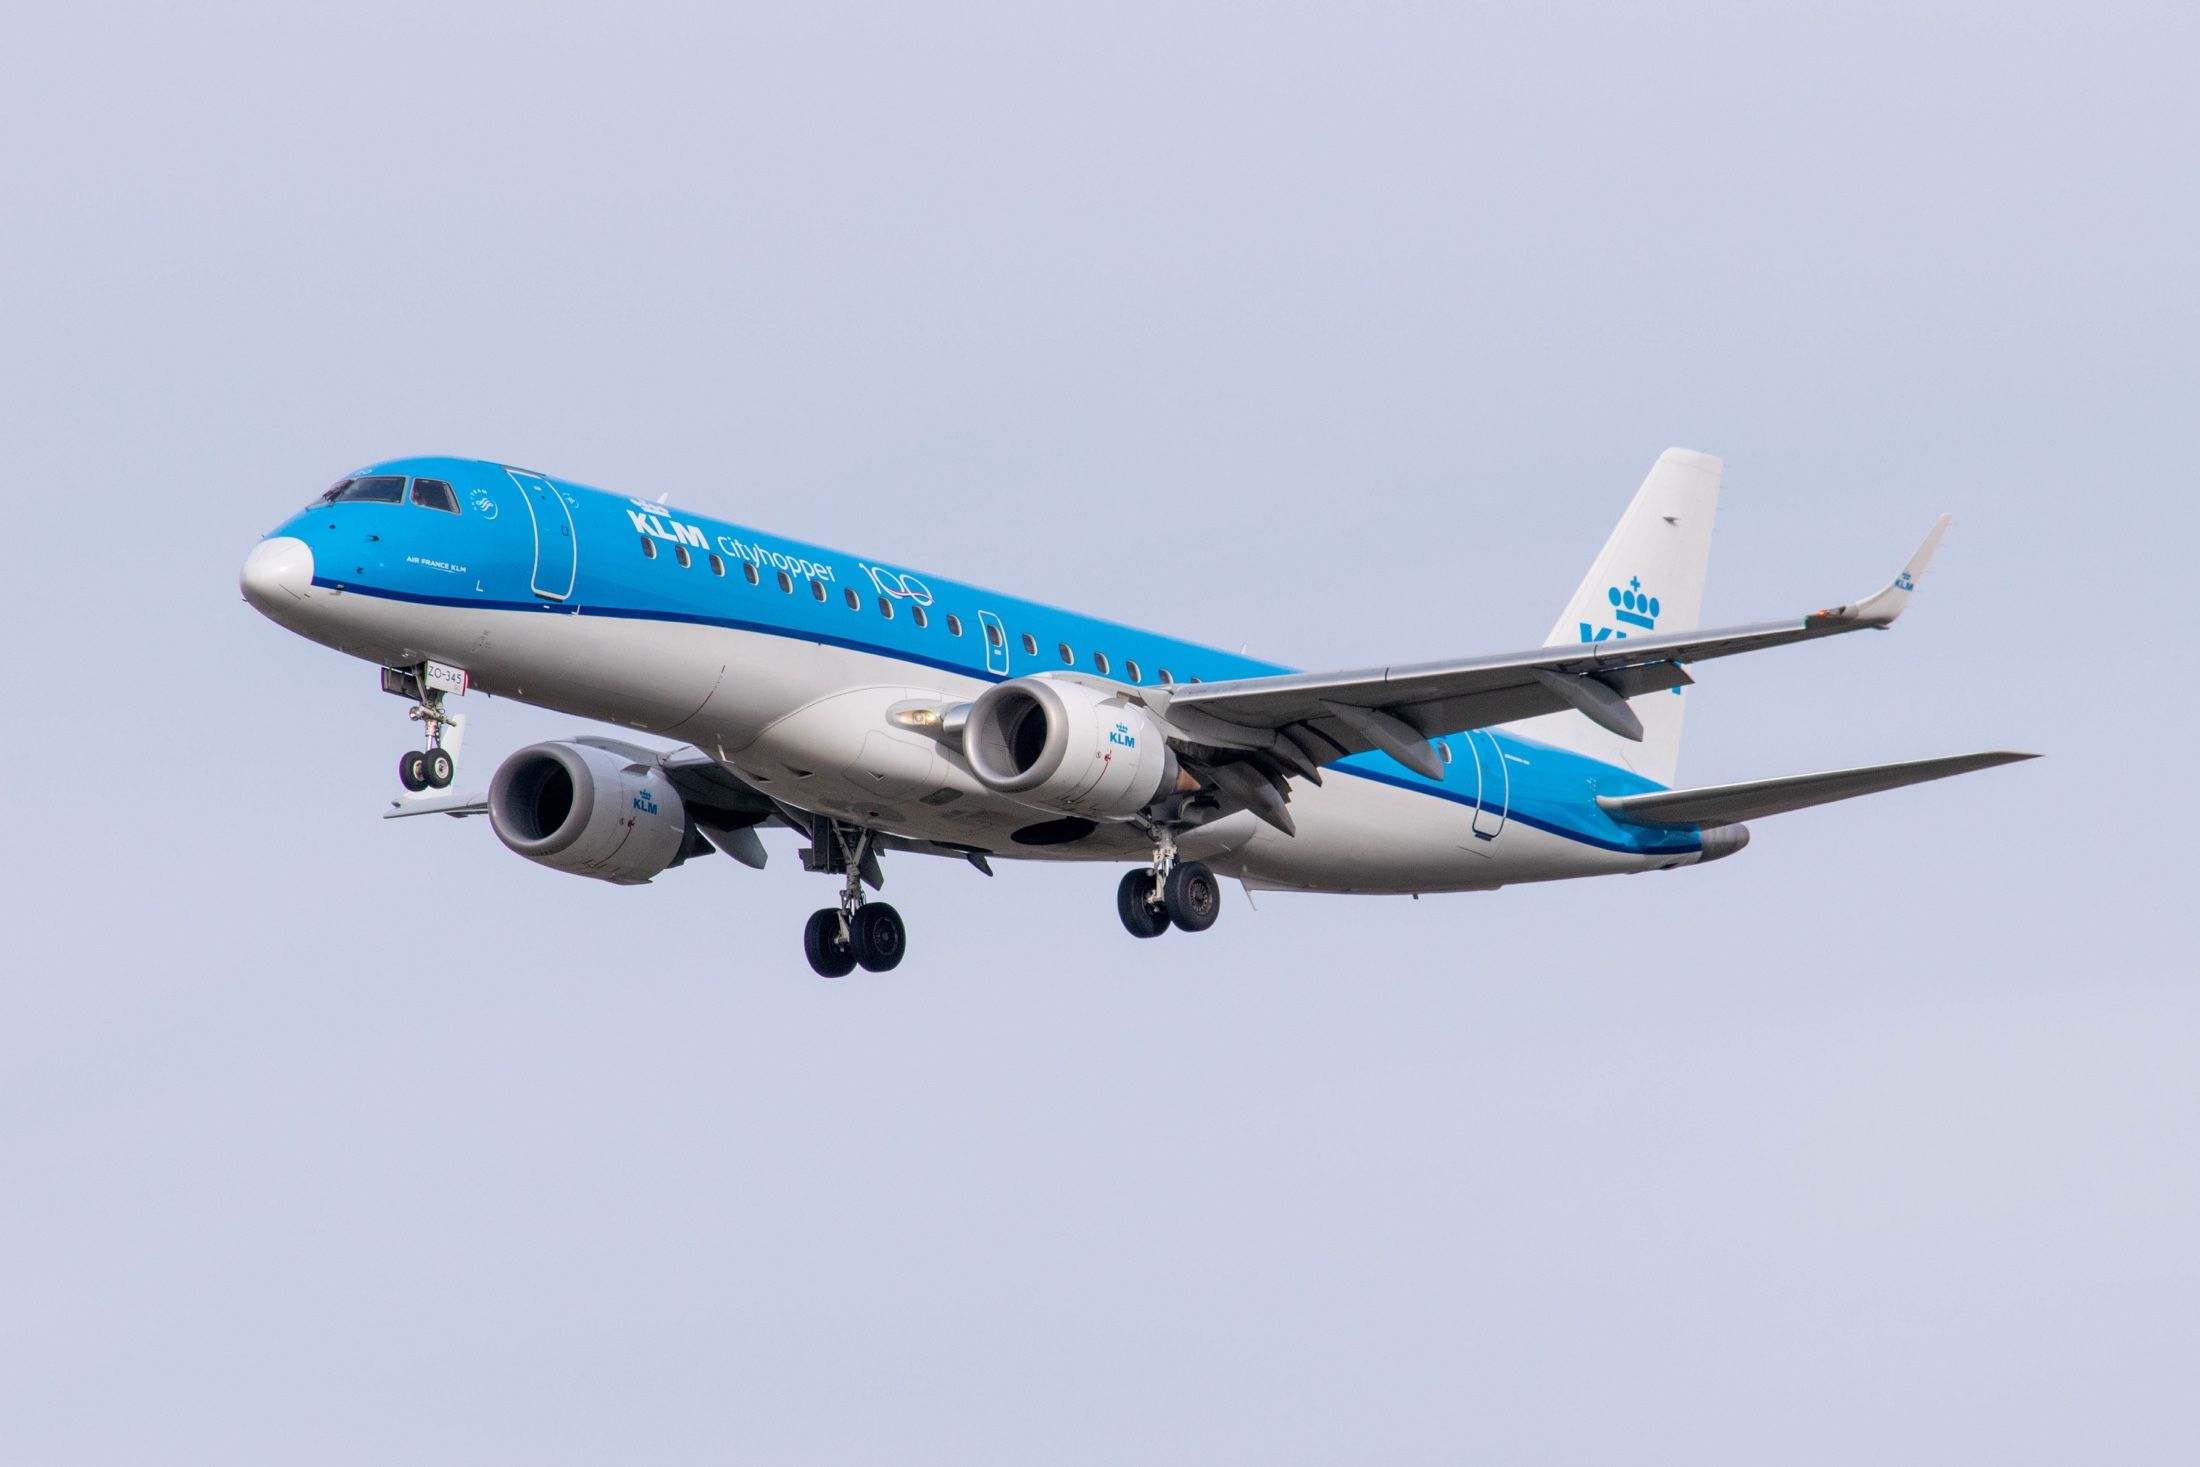 Thomas-Boon-47-KLM-2020